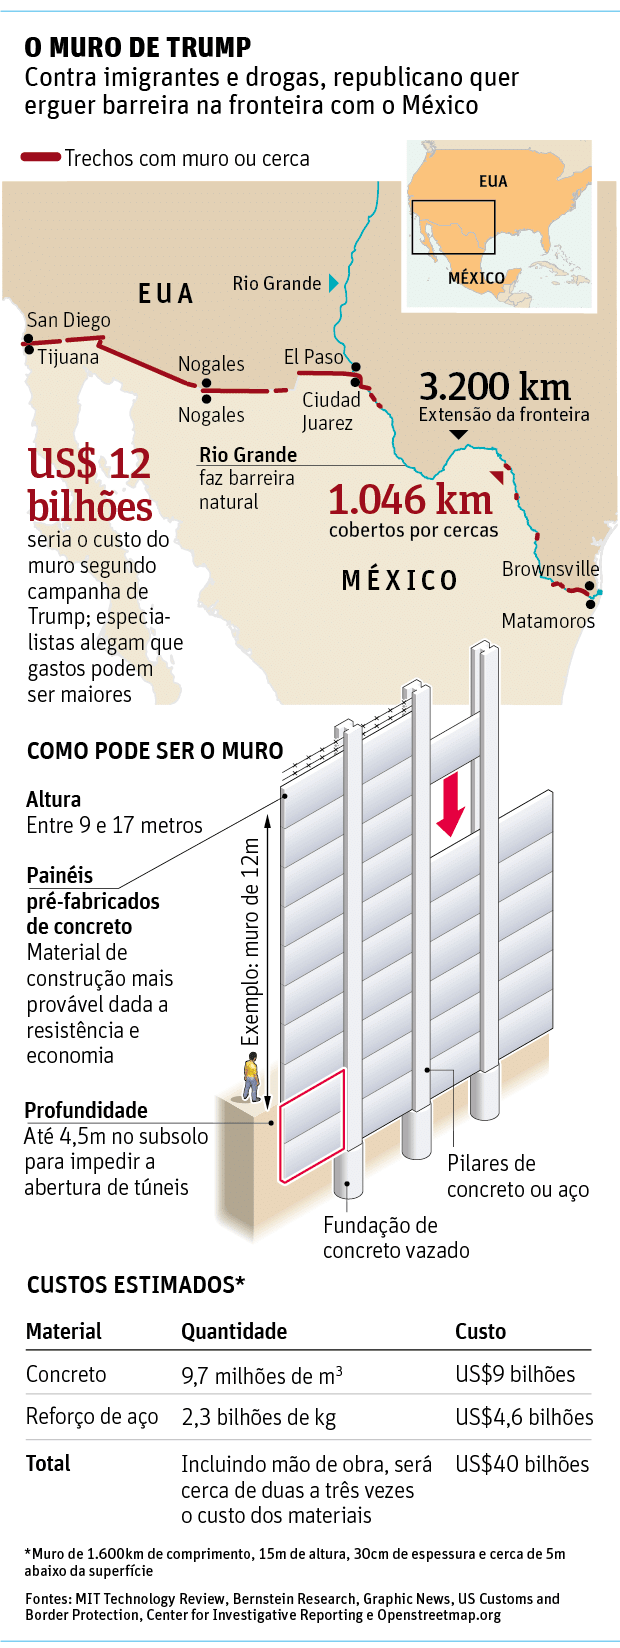 O MURO DE TRUMP - Contra imigrantes e drogas, republicano quer erguer barreira na fronteira com o México